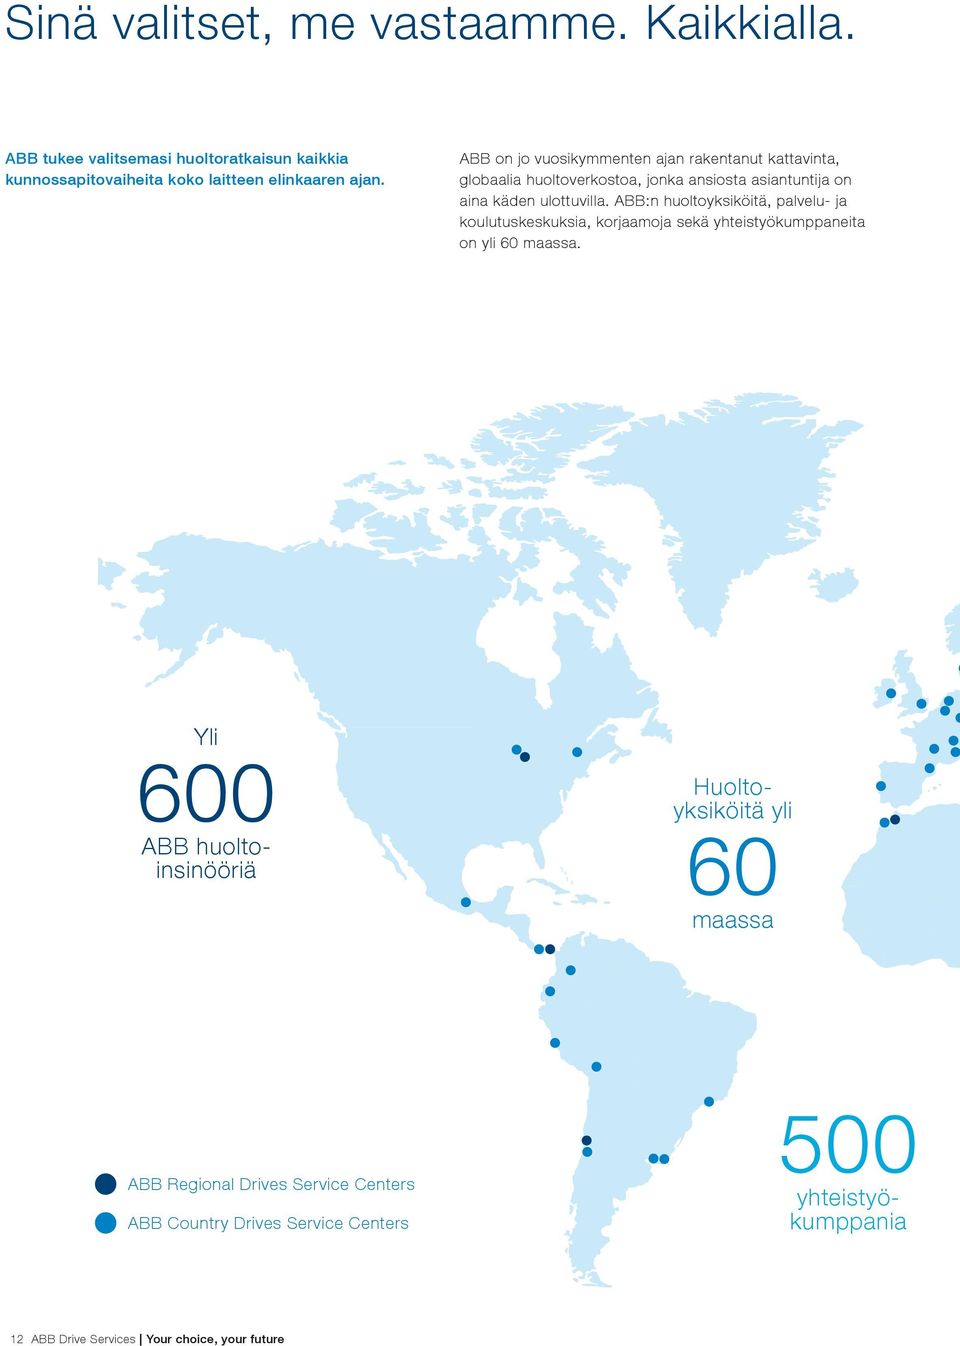 ABB:n huoltoyksiköitä, palvelu- ja koulutuskeskuksia, korjaamoja sekä yhteistyökumppaneita on yli 60 maassa.